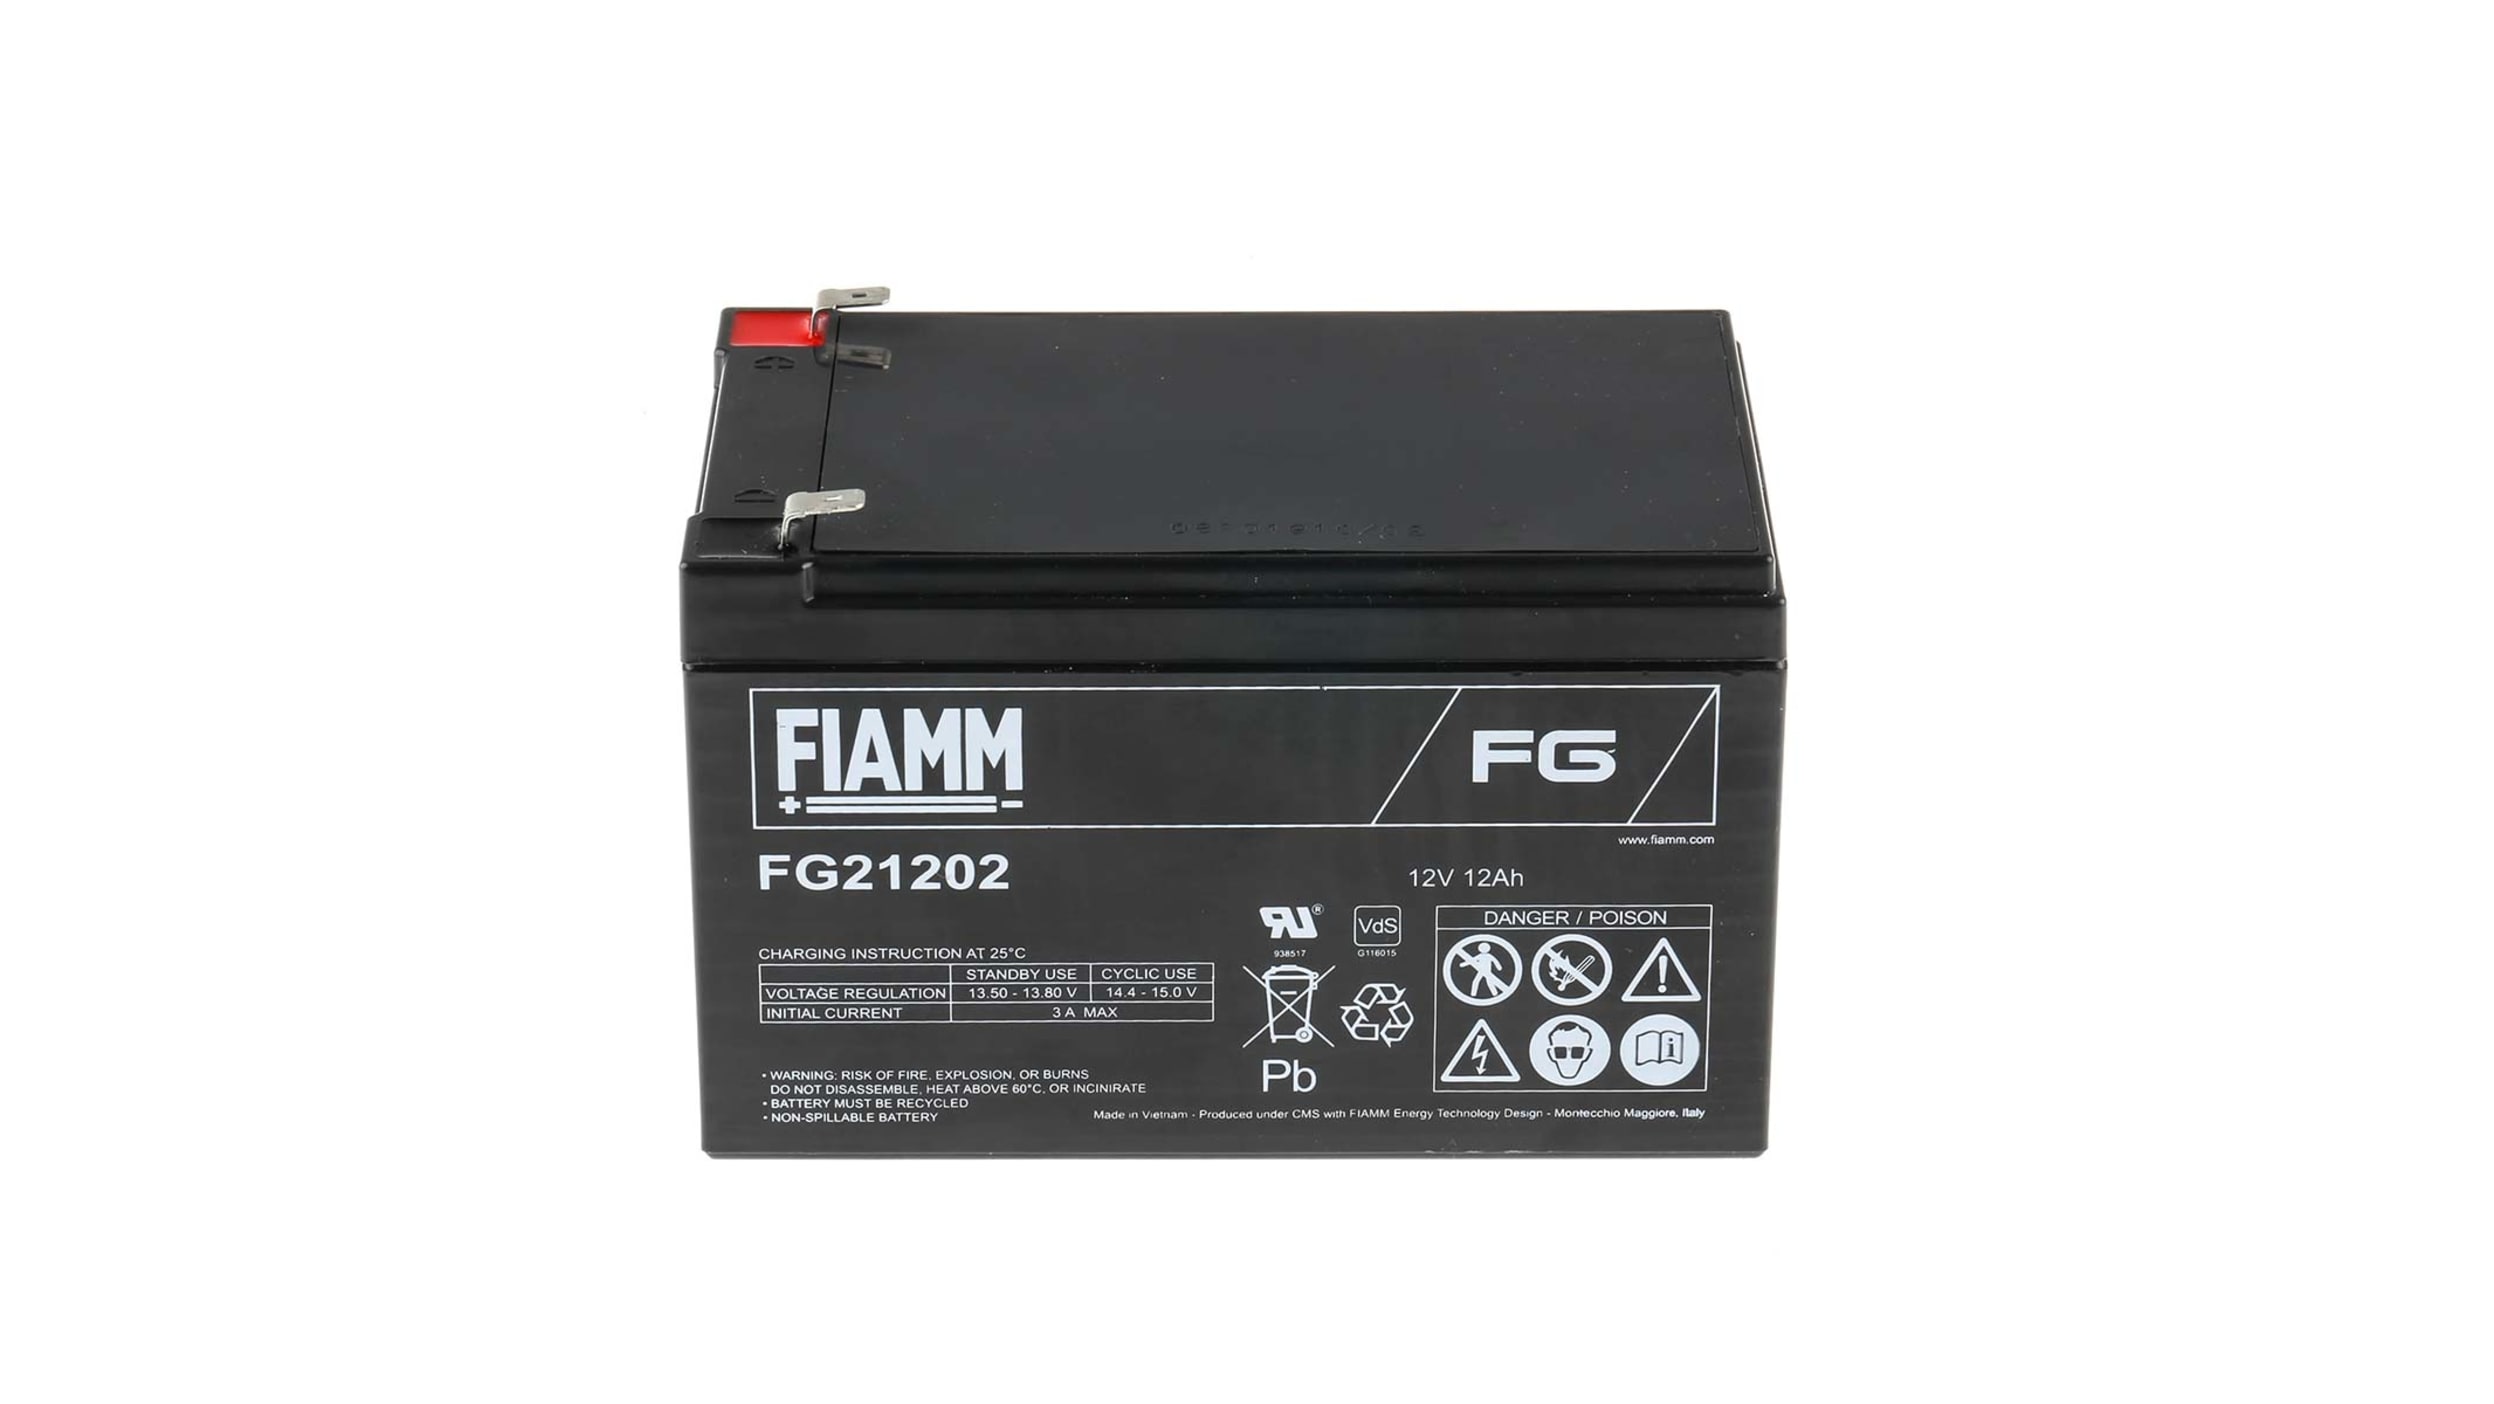 FIAMM FB12A-A - Batería Moto Fiamm 12V 12Ah 160A CCA